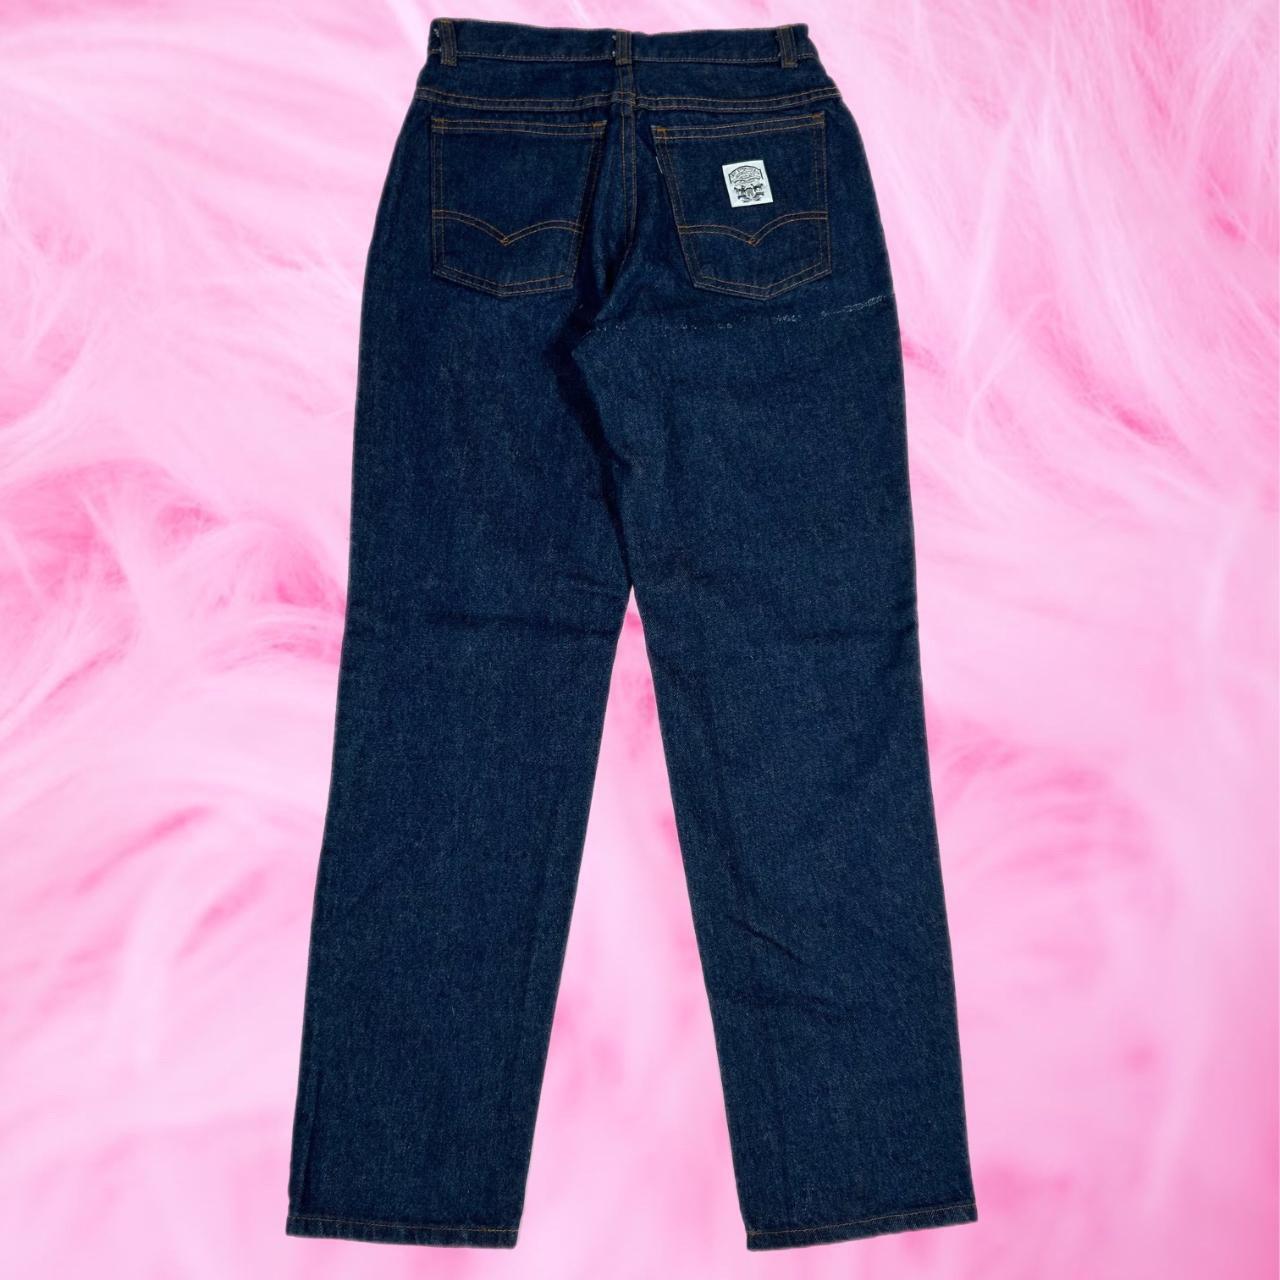 Vintage Levi’s high rise jeans • Women's Size... - Depop